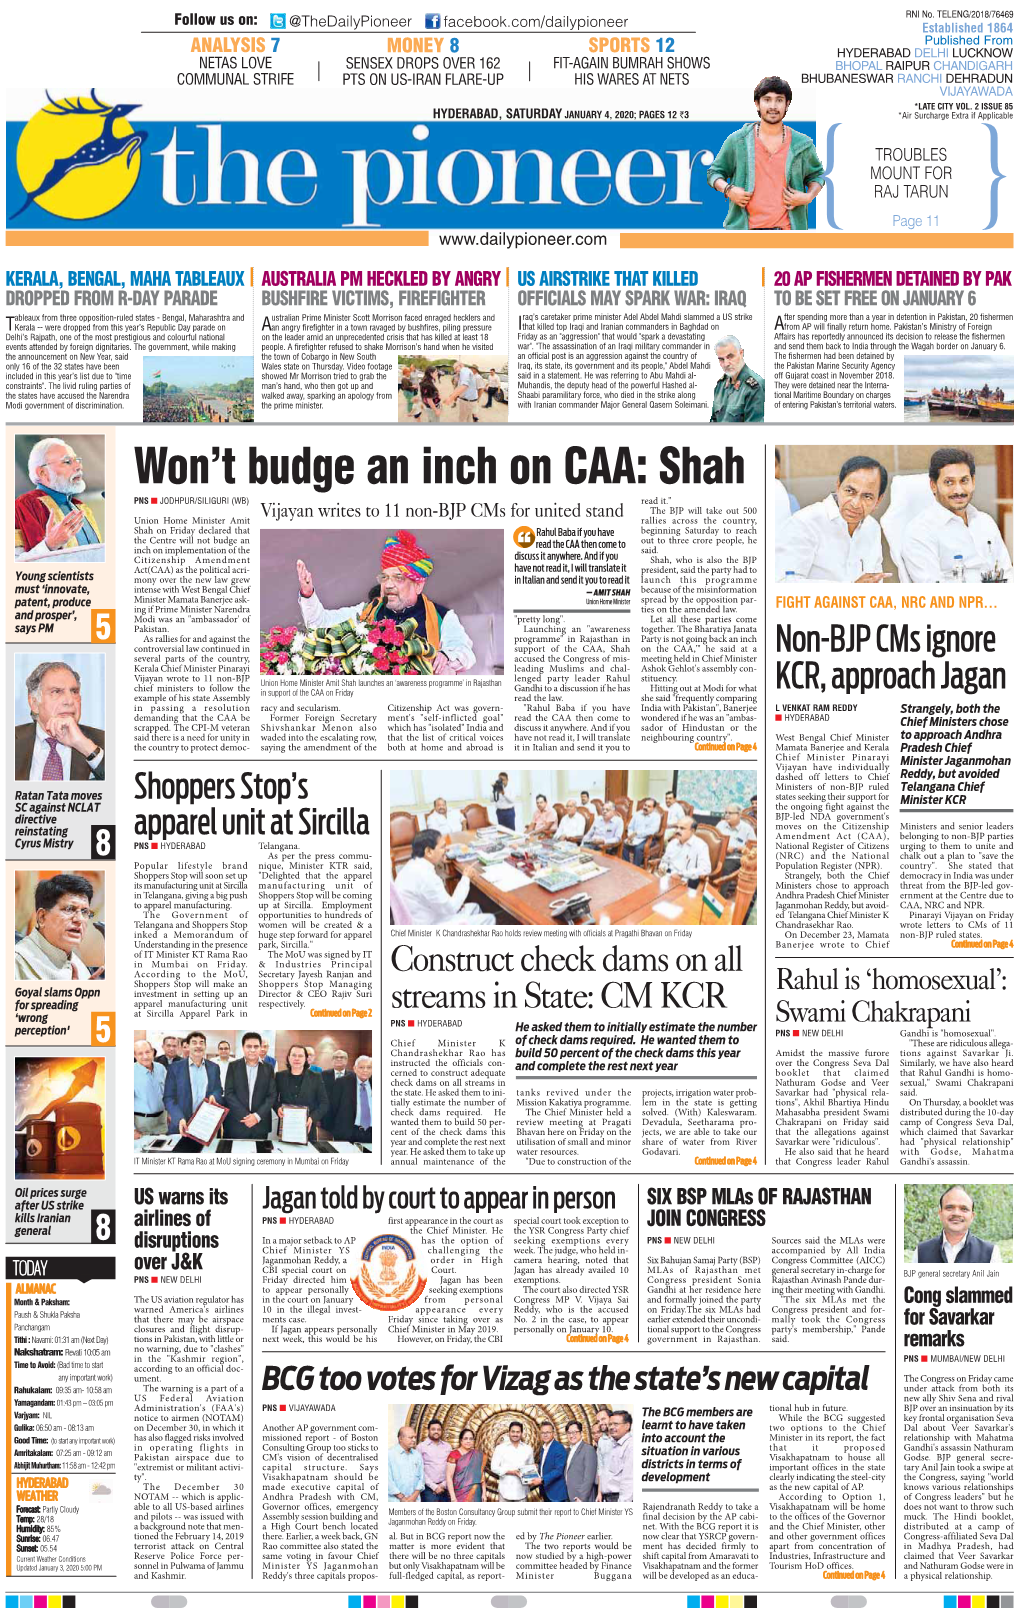 Won't Budge an Inch on CAA: Shah